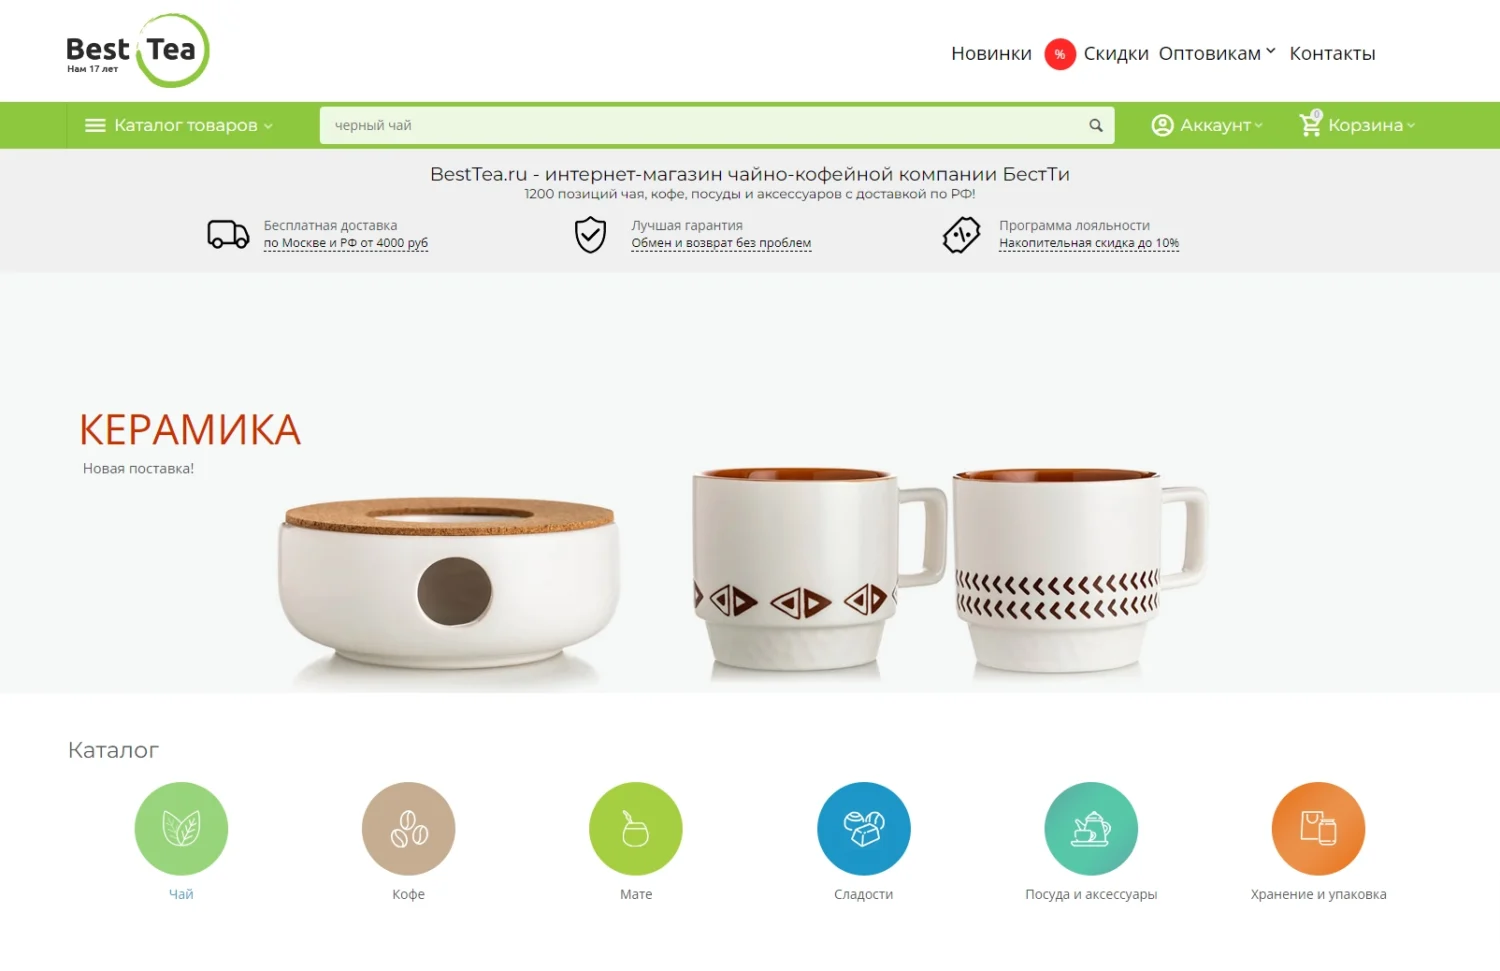 BestTea.ru – интернет-магазин чайно-кофейной компании